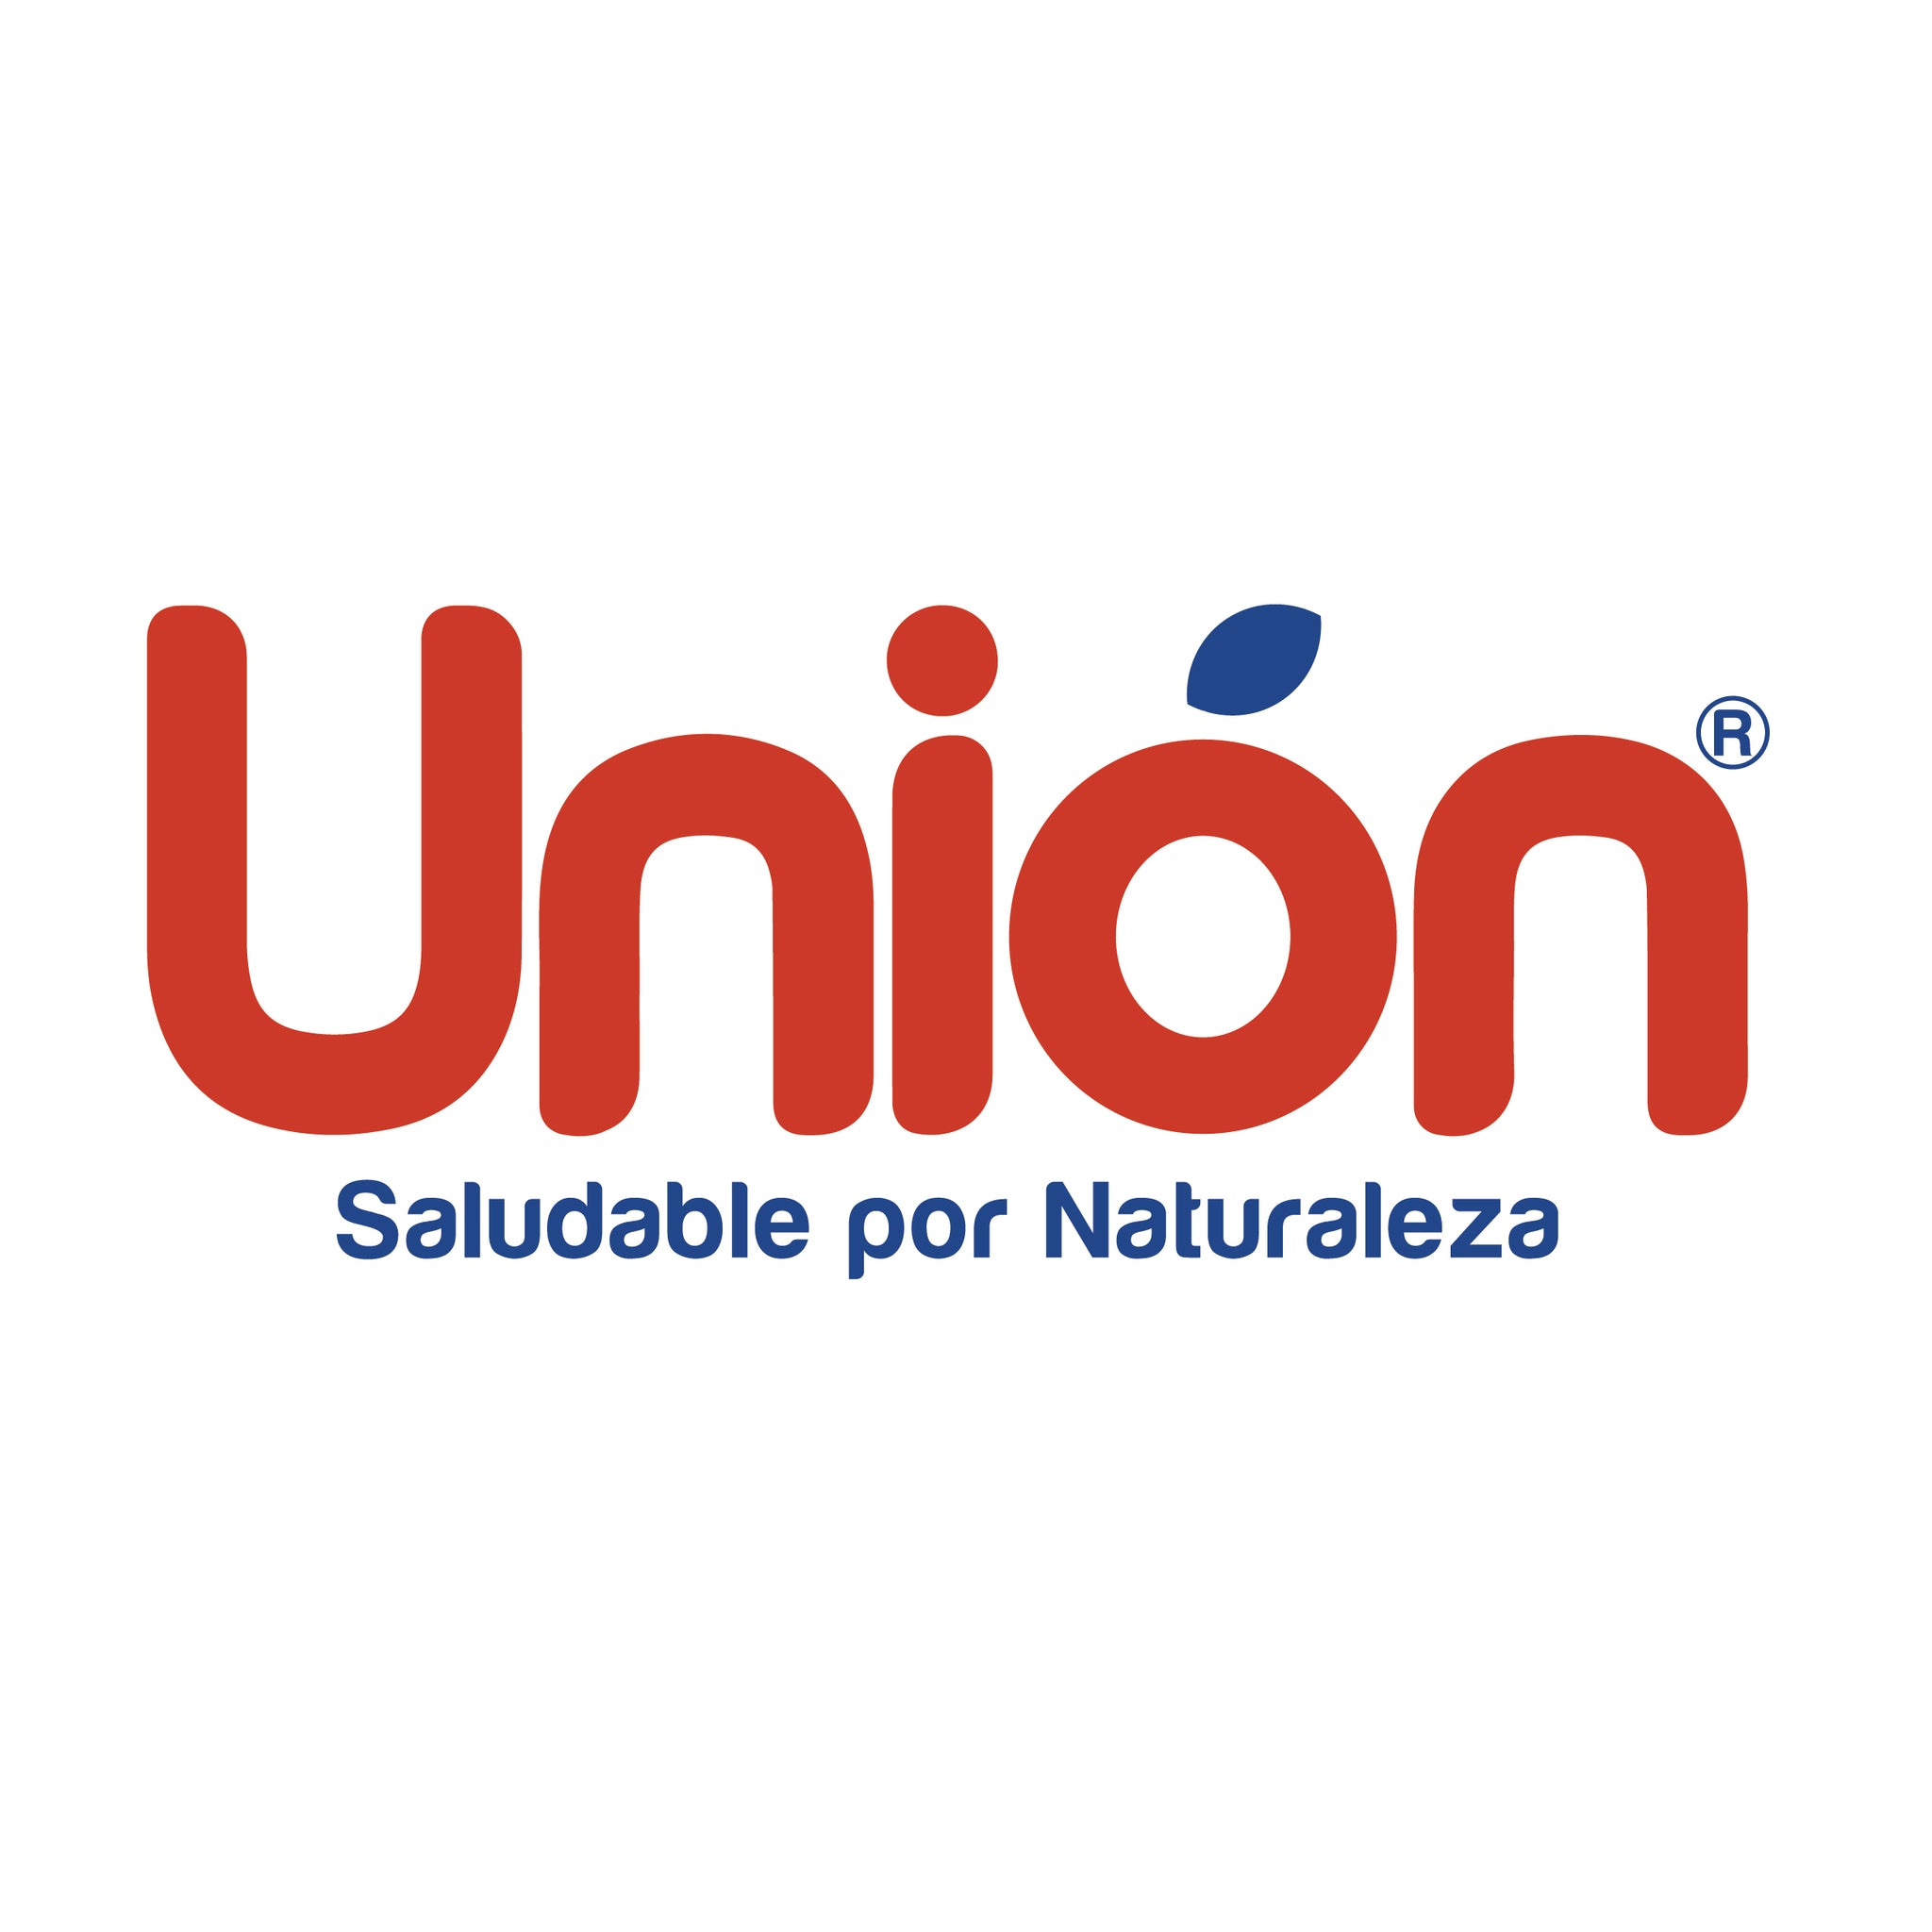 La Unión | Canasta de productos